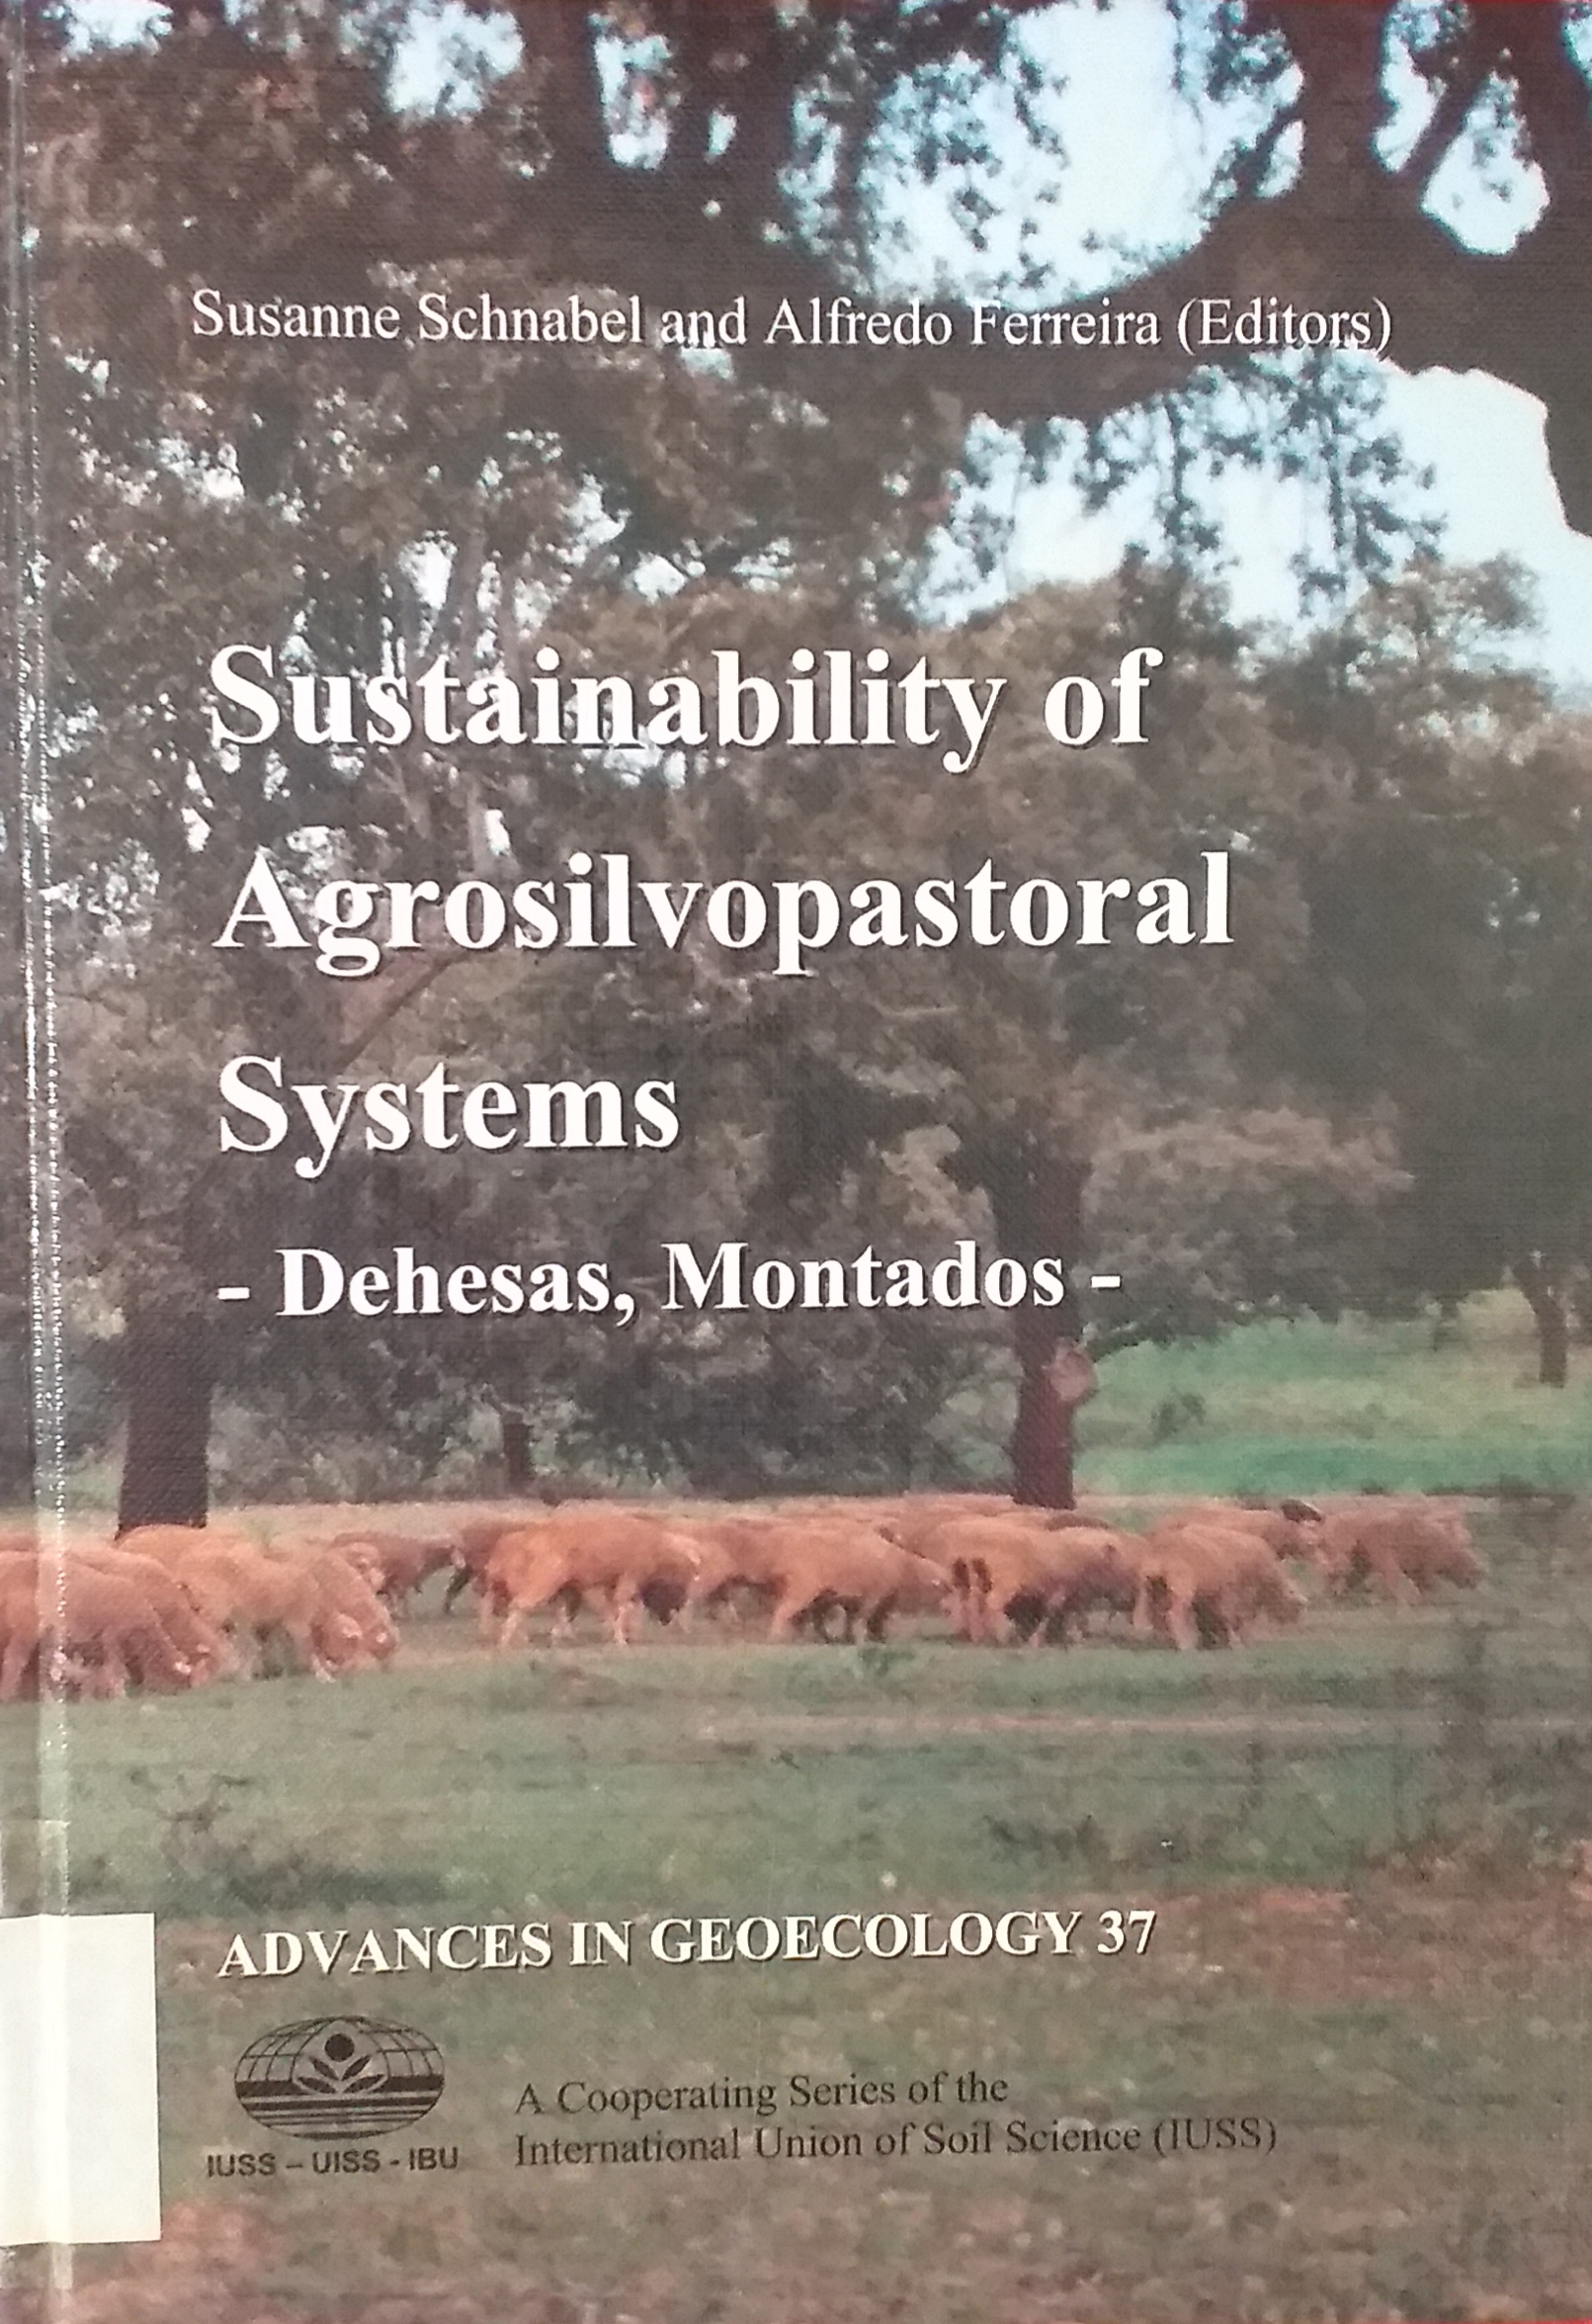 Imagen de portada del libro Sustainability of agrosilvopastoral systems